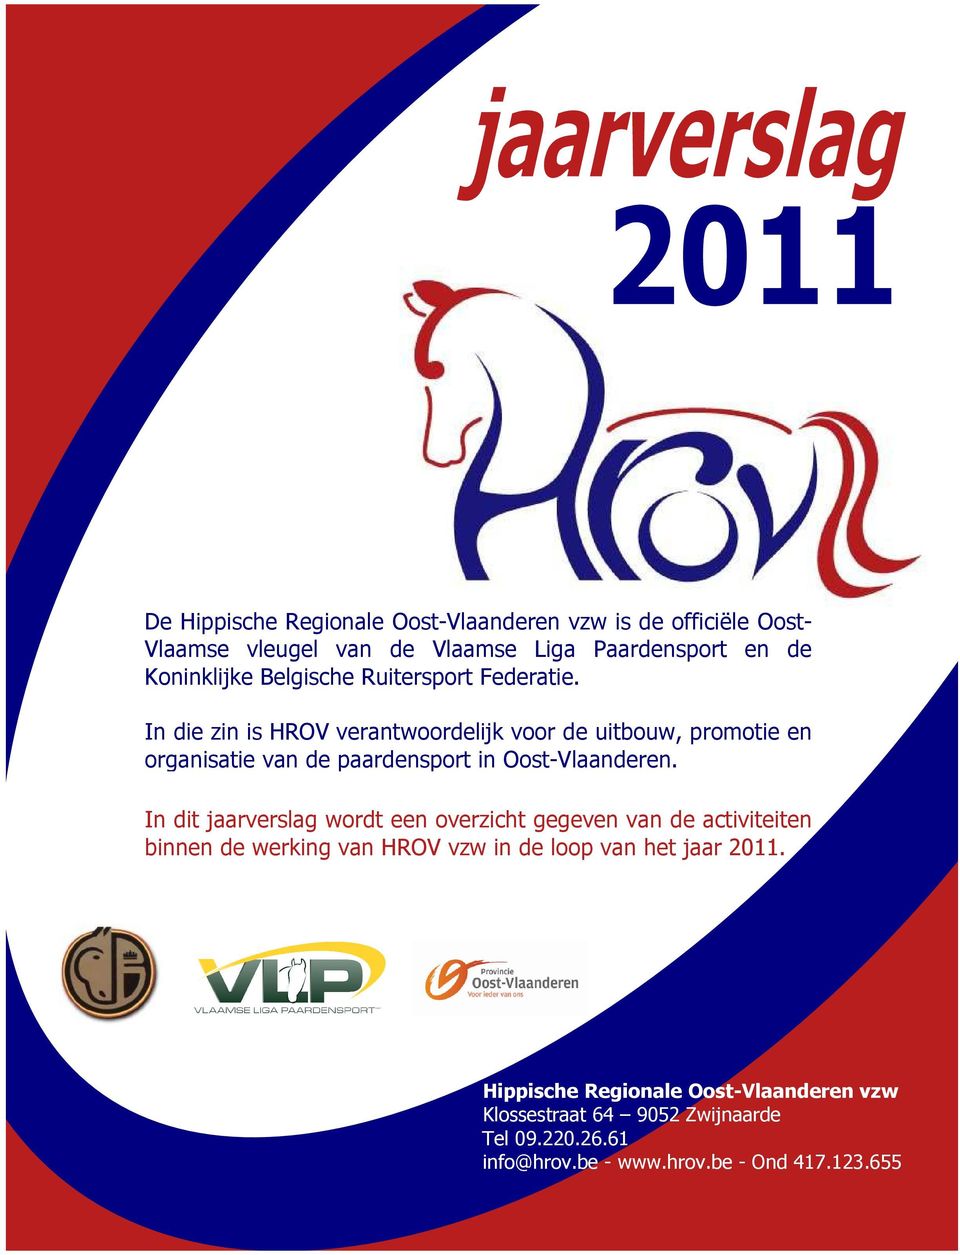 In die zin is HROV verantwoordelijk voor de uitbouw, promotie en organisatie van de paardensport in Oost-Vlaanderen.